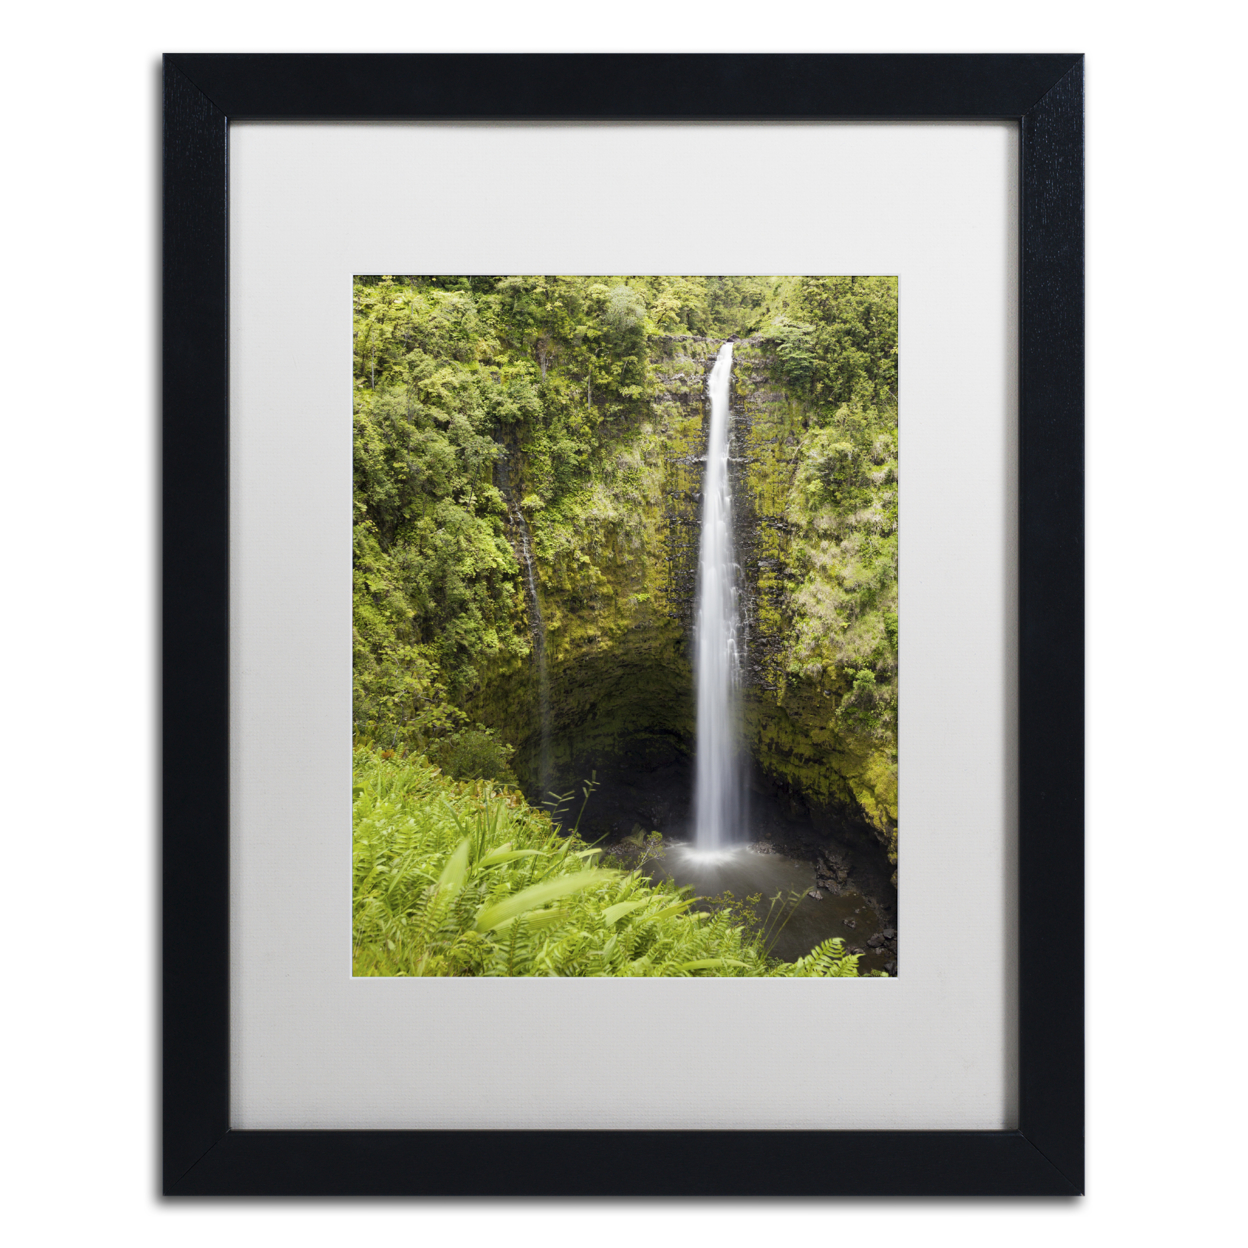 Chris Moyer 'Akaka Falls' Black Wooden Framed Art 18 X 22 Inches